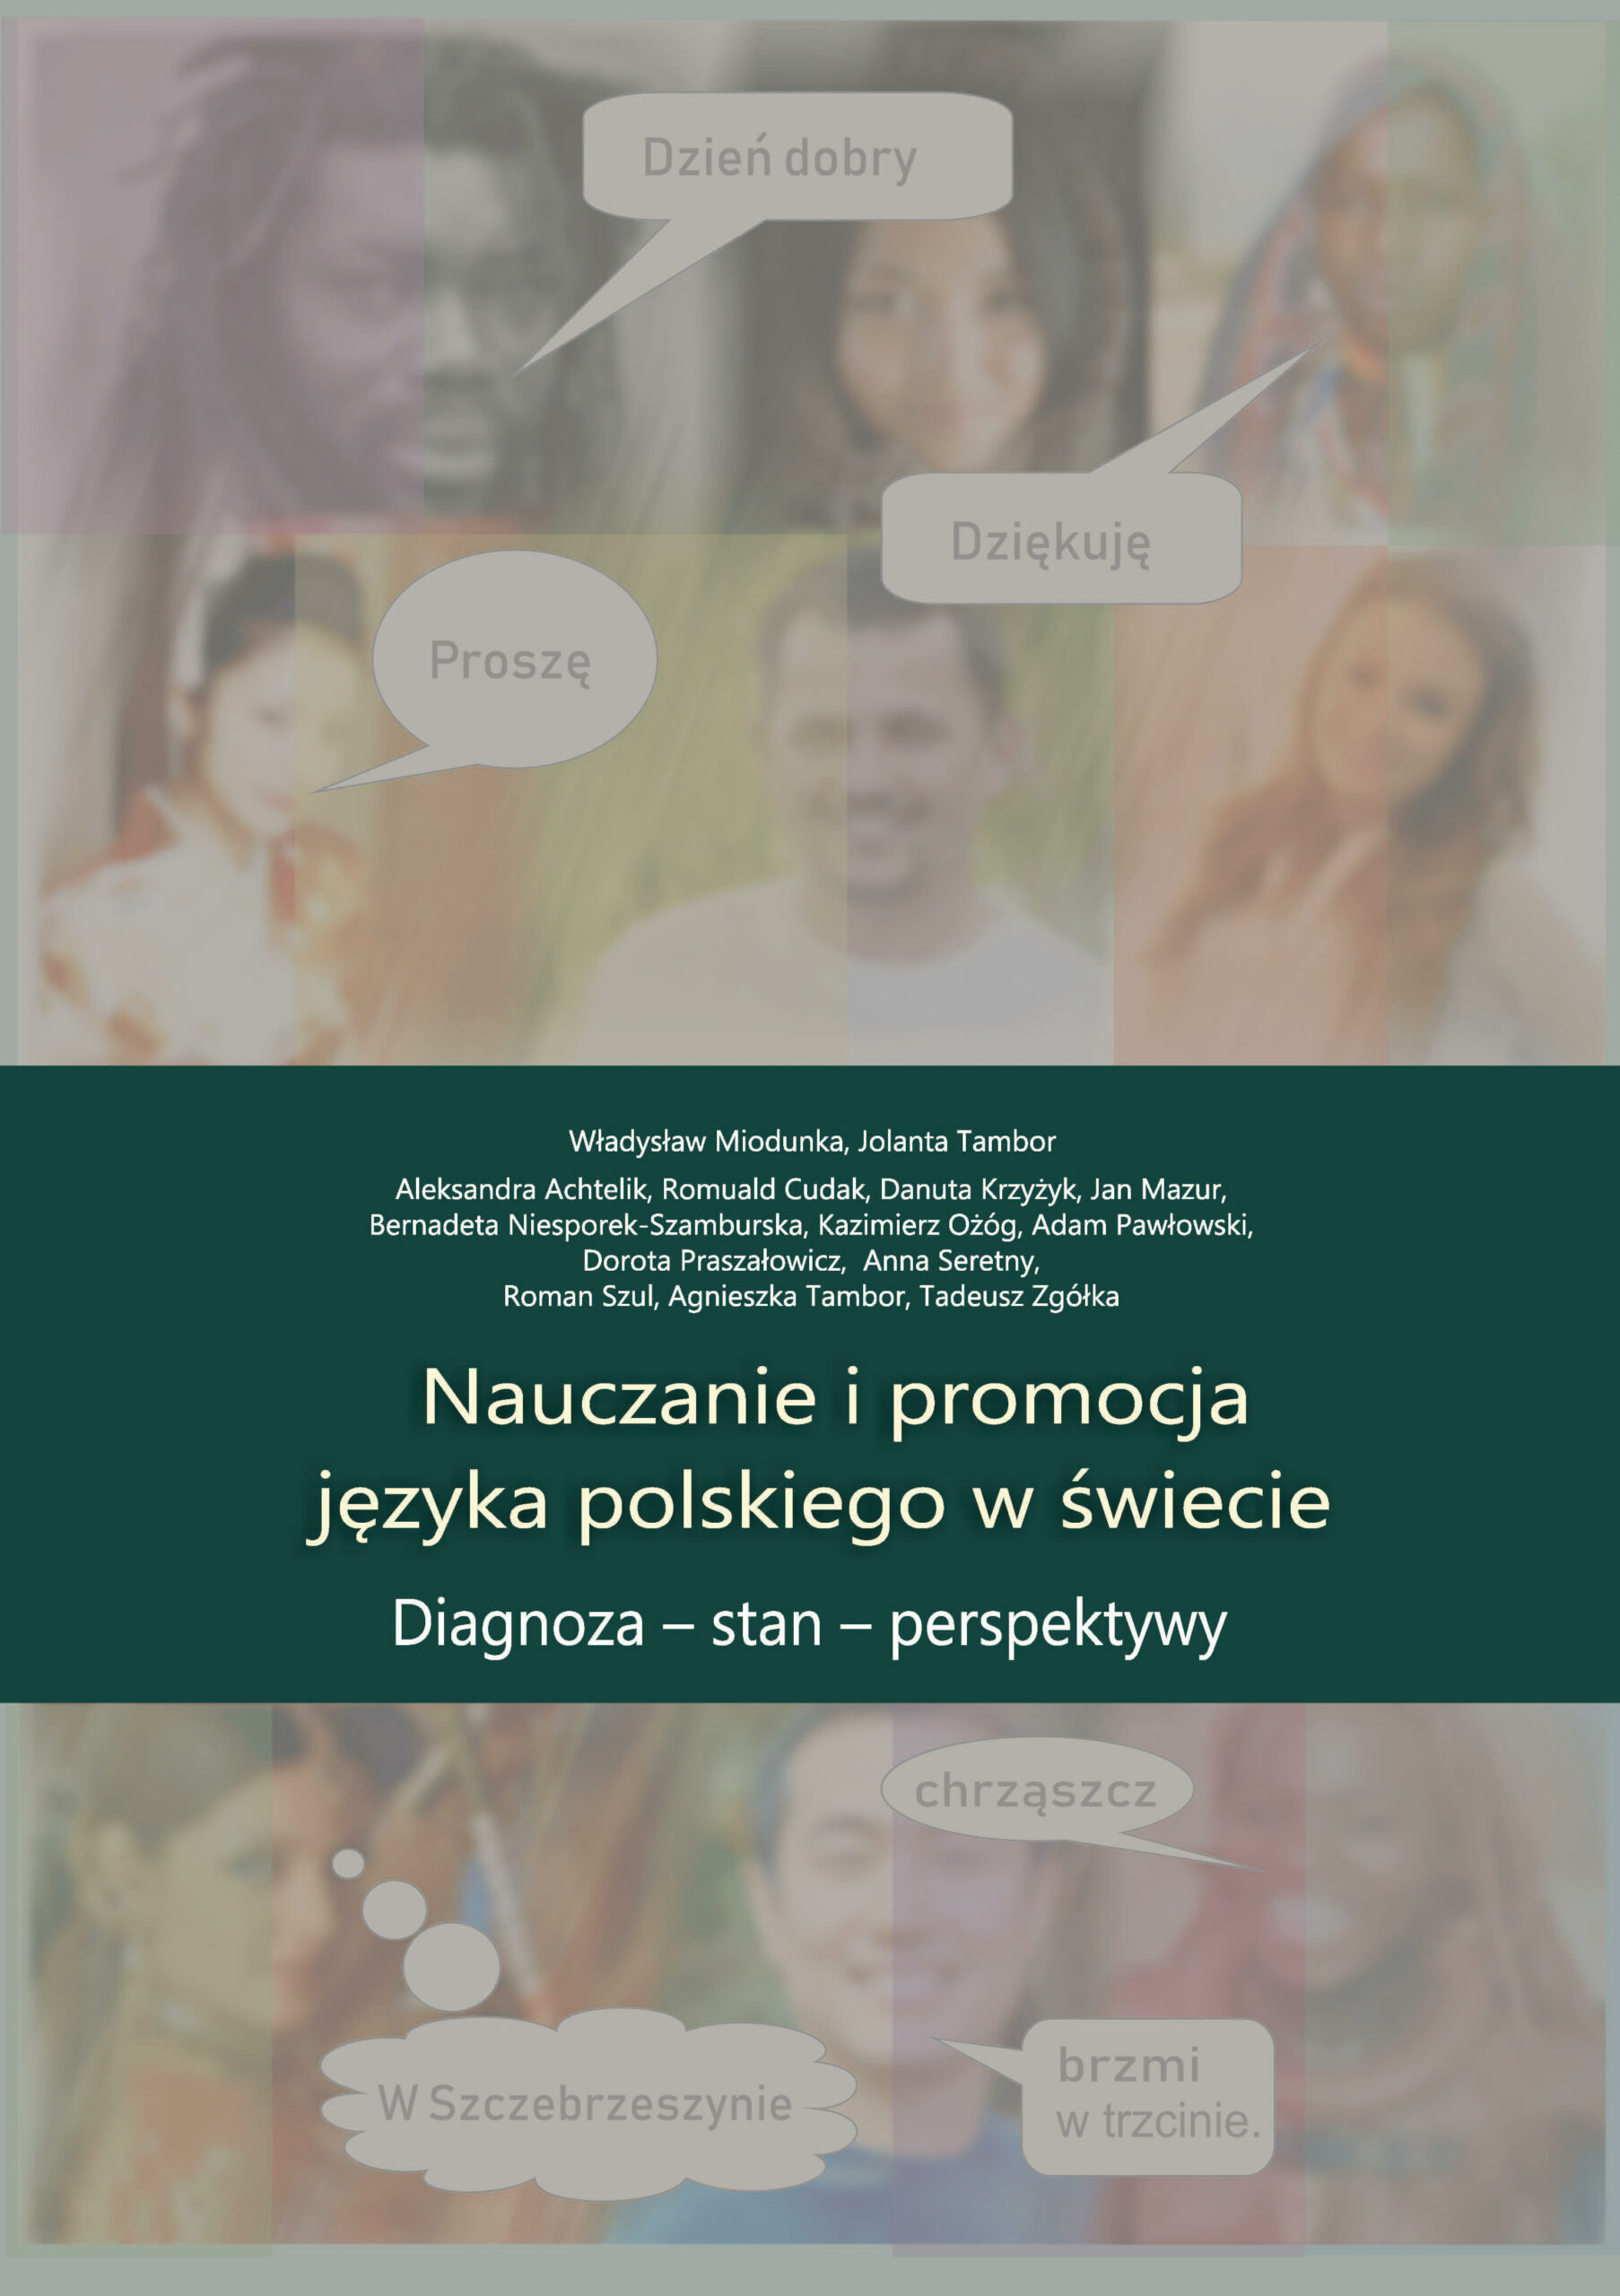 okładka książki Nauczanie i promocja języka polskiego w świecie: diagnoza - stan - perspektywy